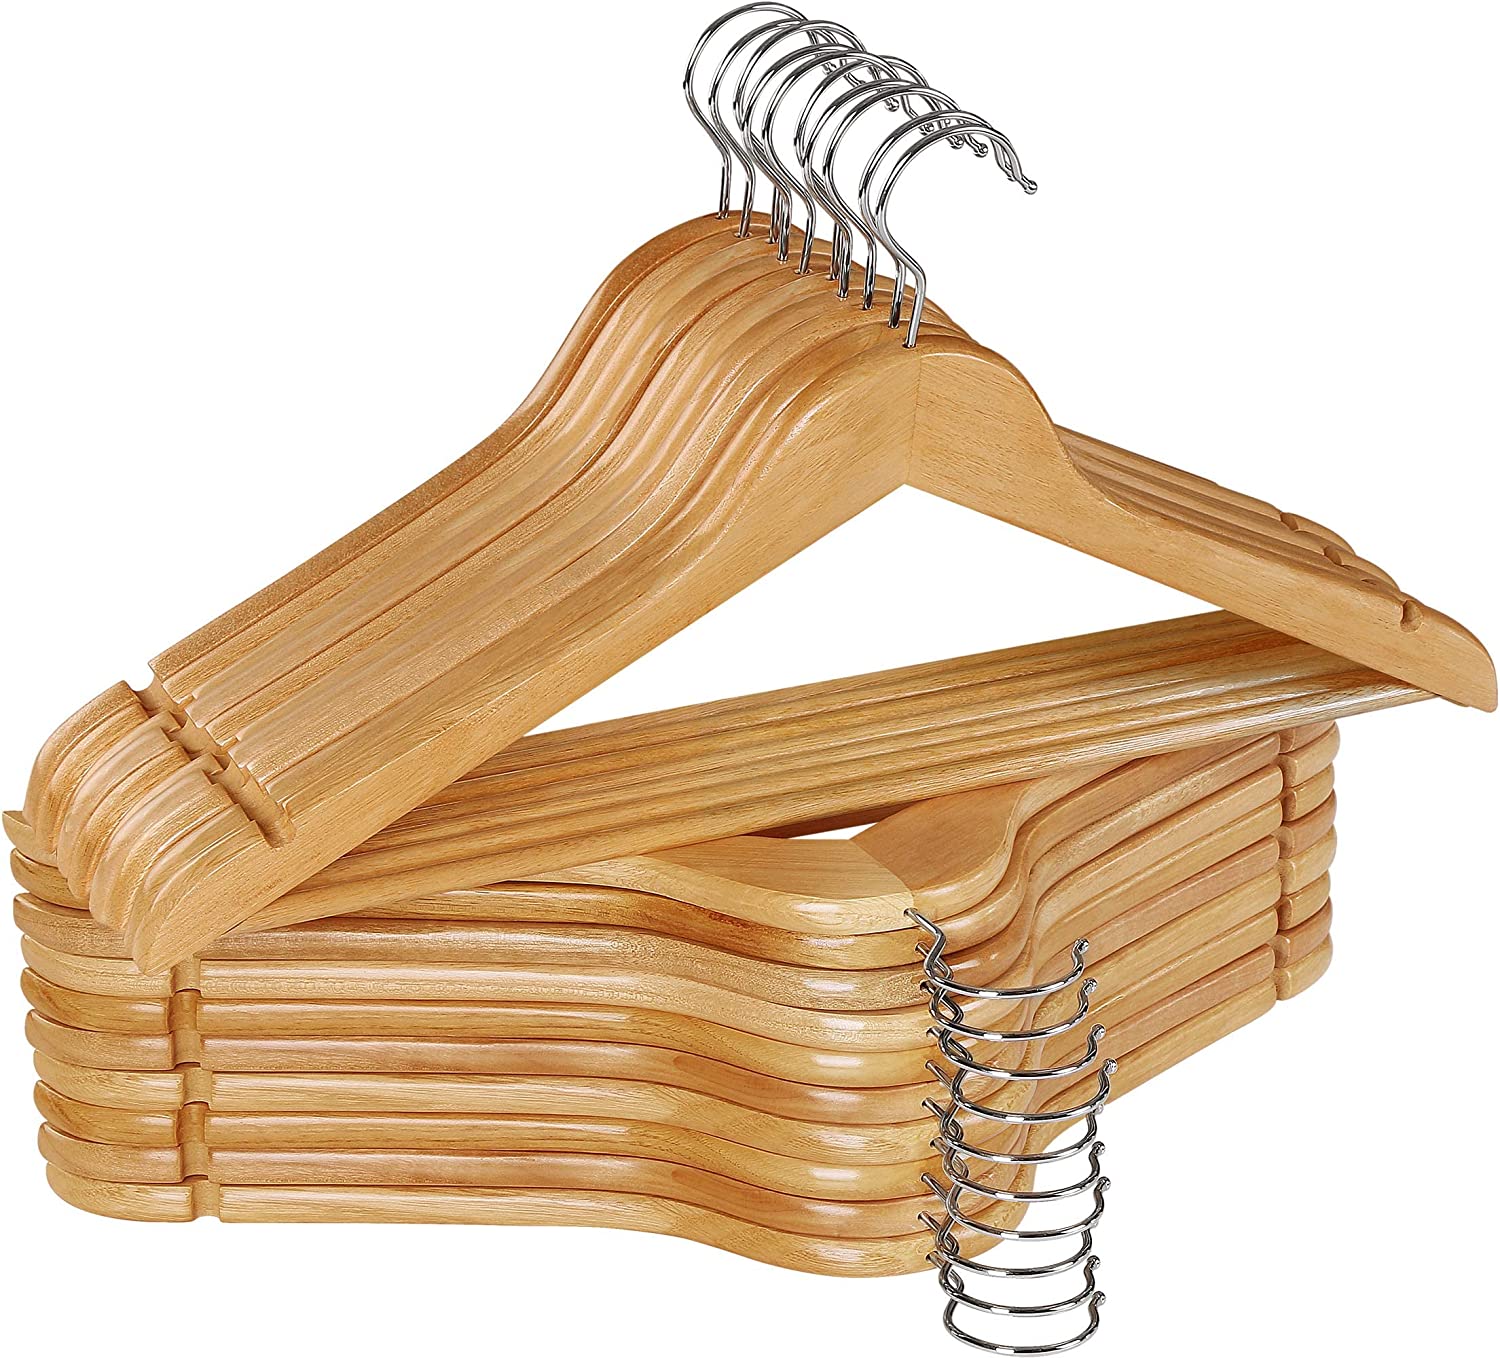 Buy Wooden Hangers in Bulk - Wholesale Clothes Hangers